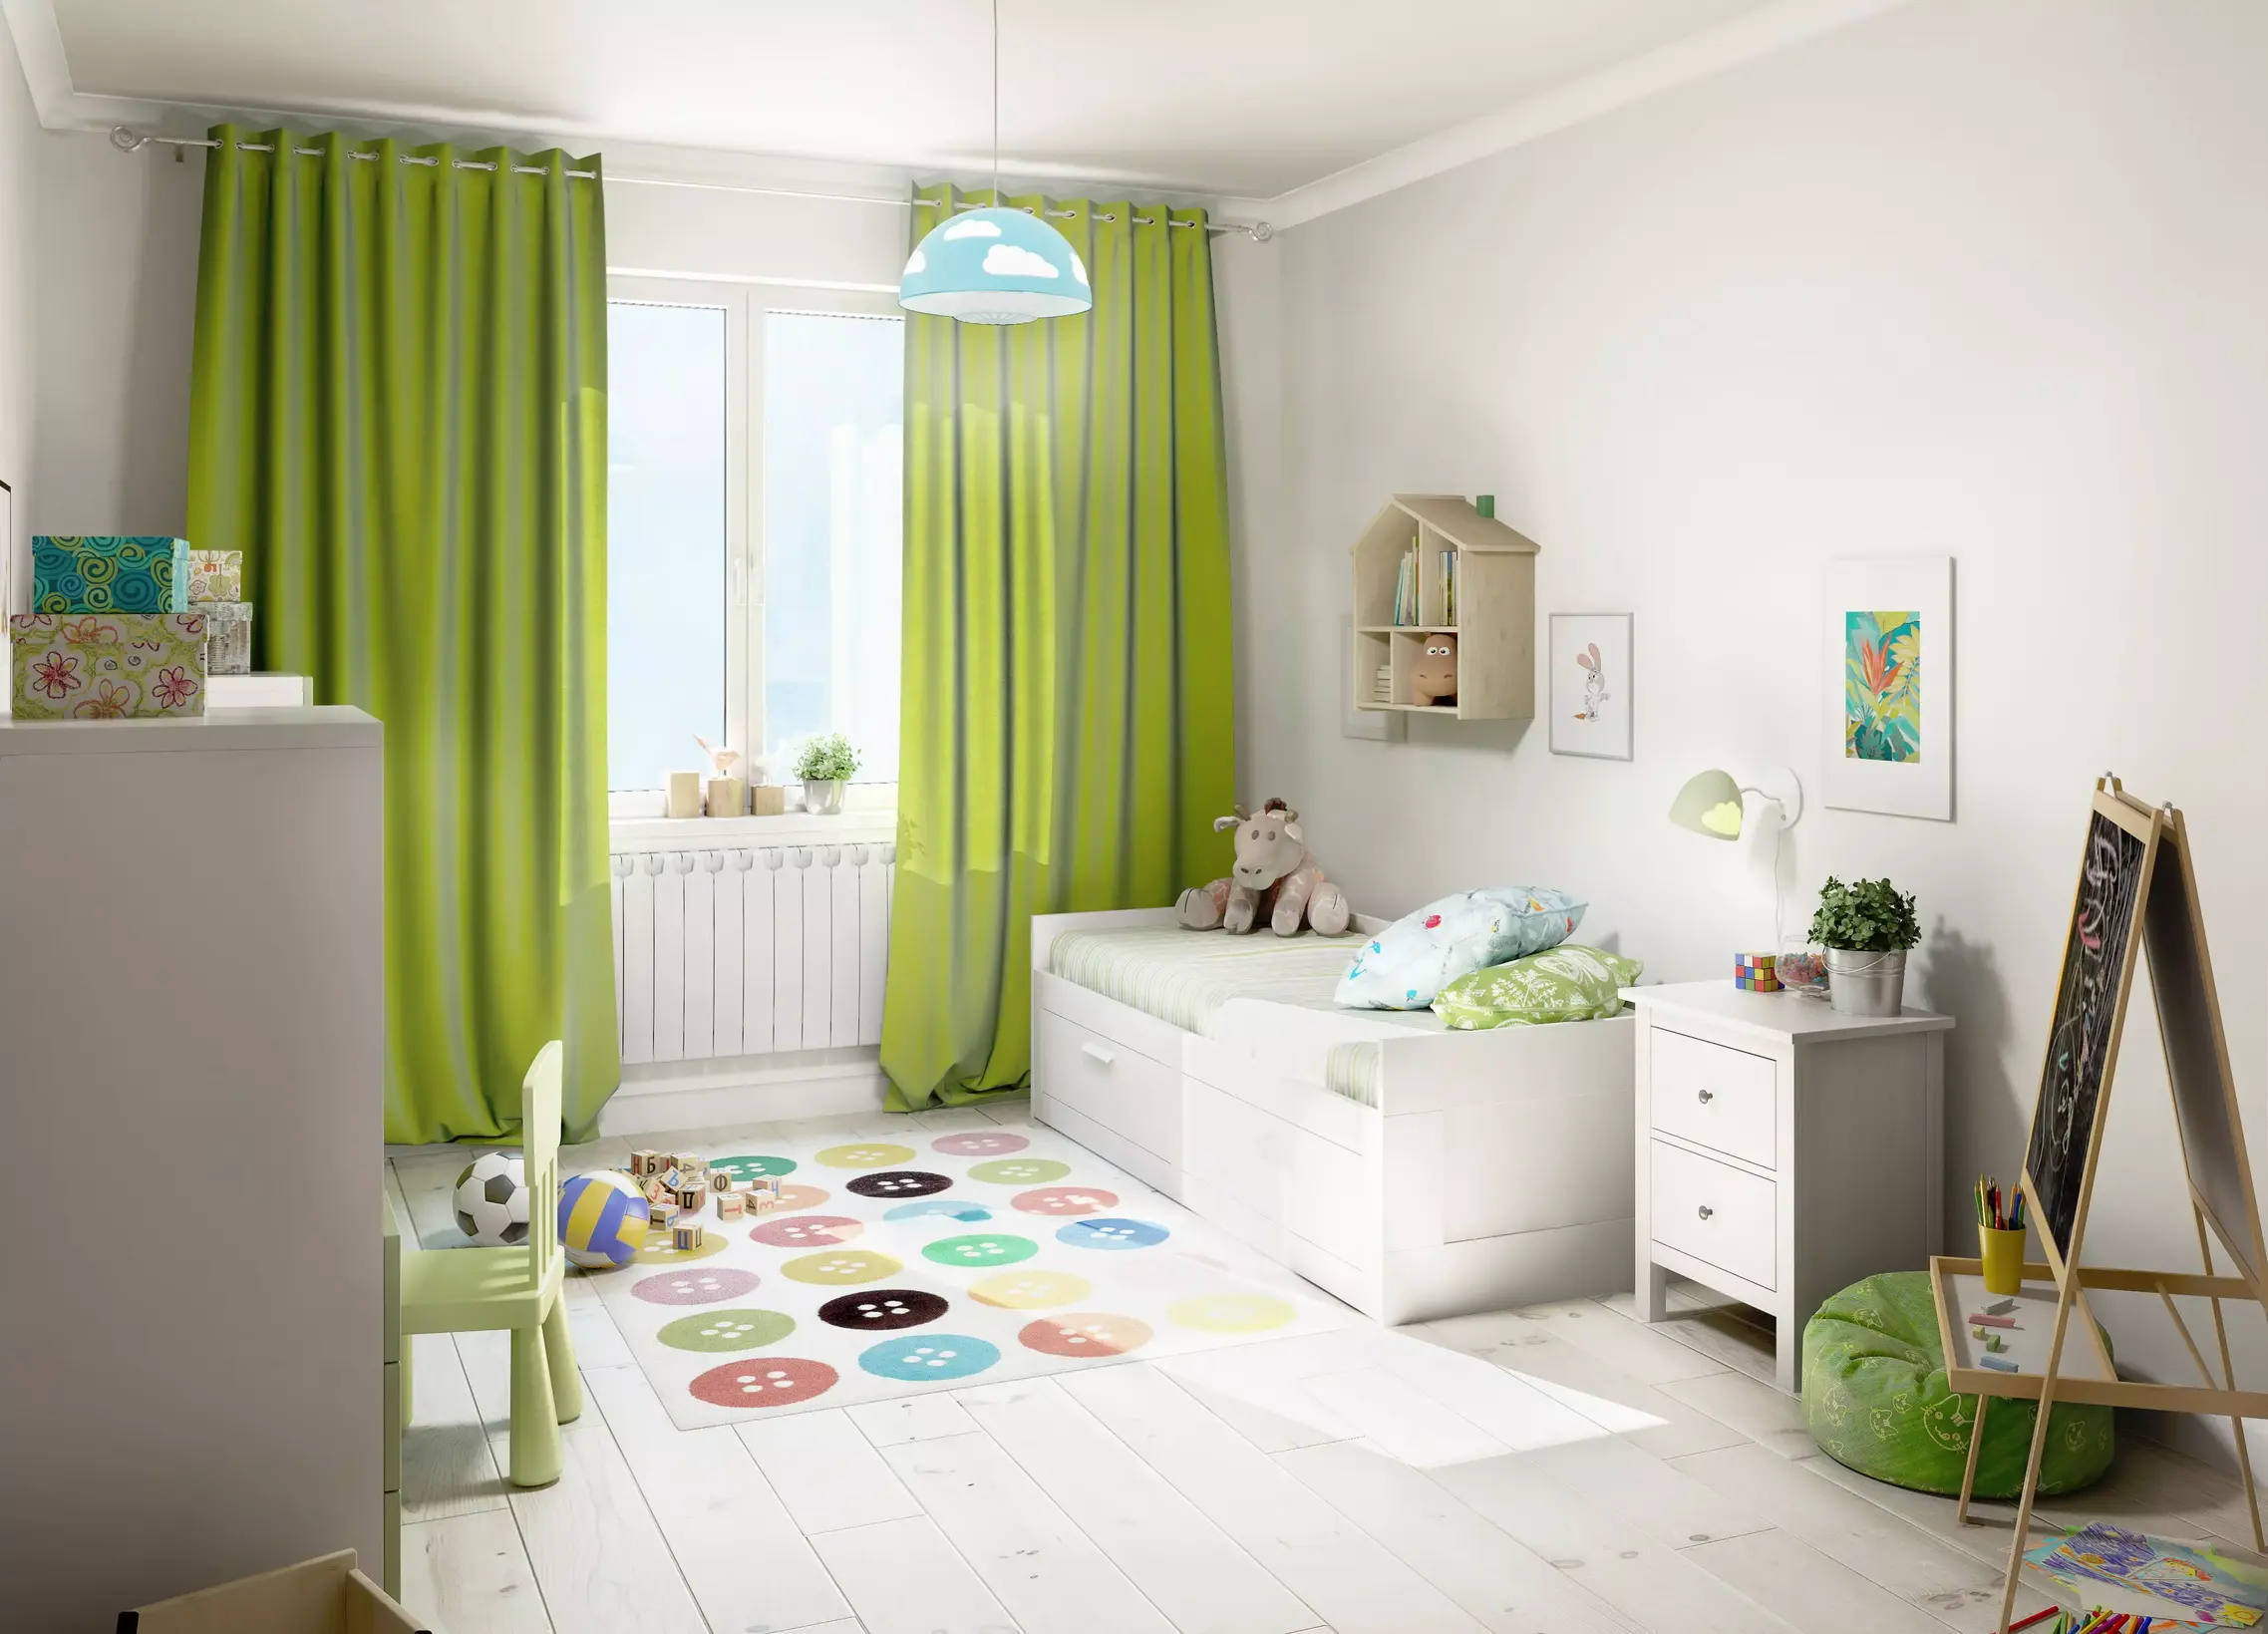 Pokój dziecięcy w stylu nowoczesnym z łóżkiem i komodą. Na zdjęciu widoczne duże okno z zielonymi zasłonami. Propozycja dekorów użytych w realizacji: Biel Arktyczna